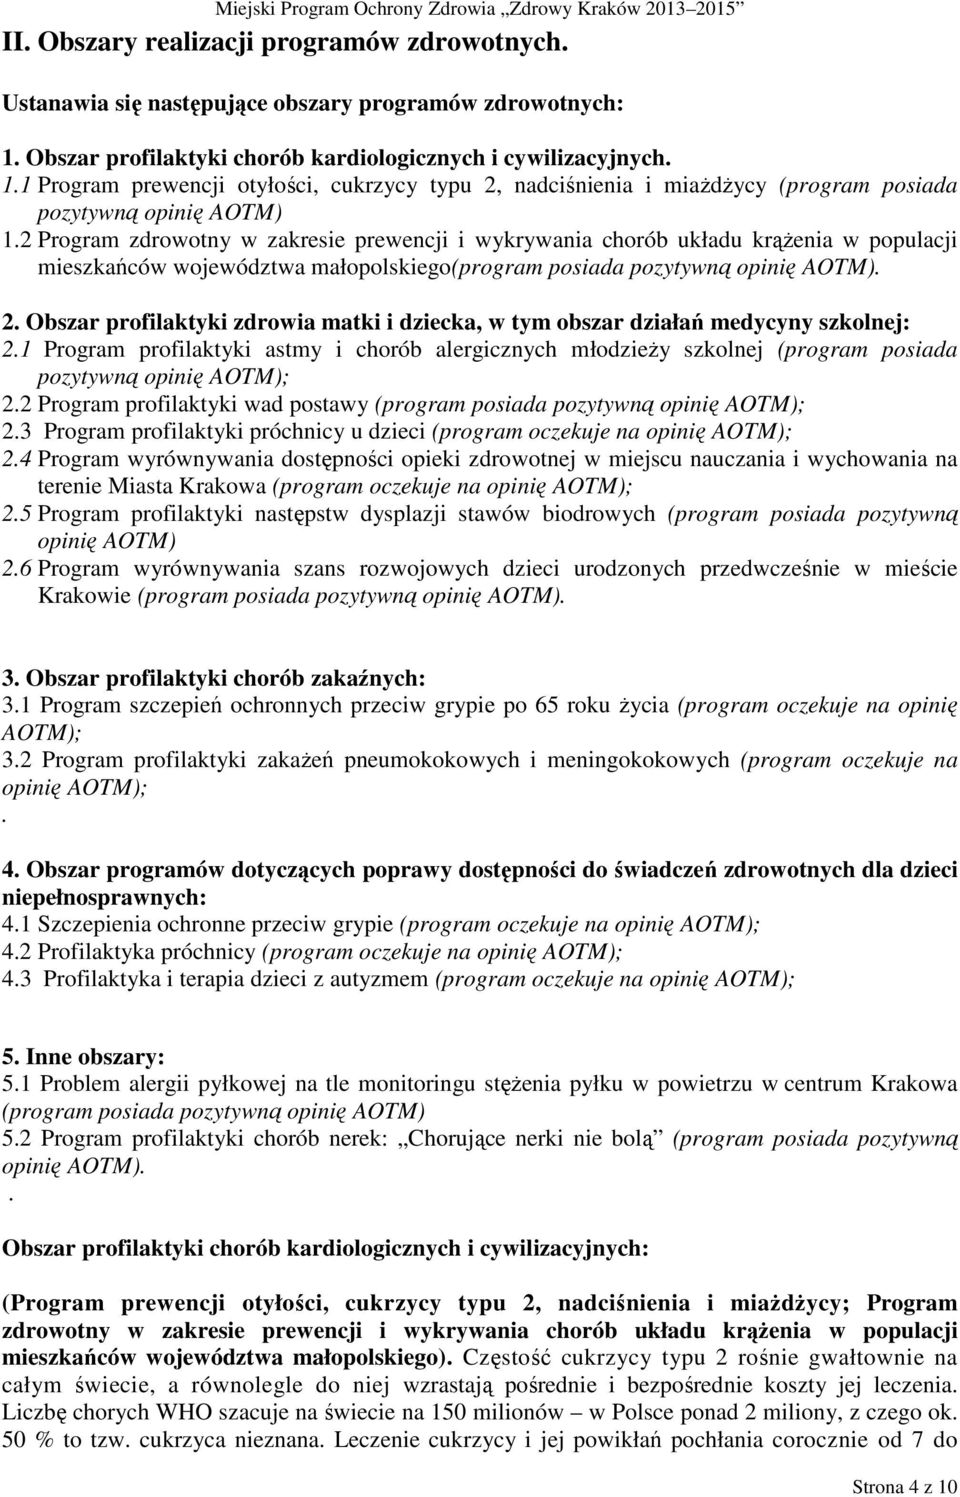 2 Program zdrowotny w zakresie prewencji i wykrywania chorób układu krąŝenia w populacji mieszkańców województwa małopolskiego(program posiada pozytywną opinię AOTM). 2.